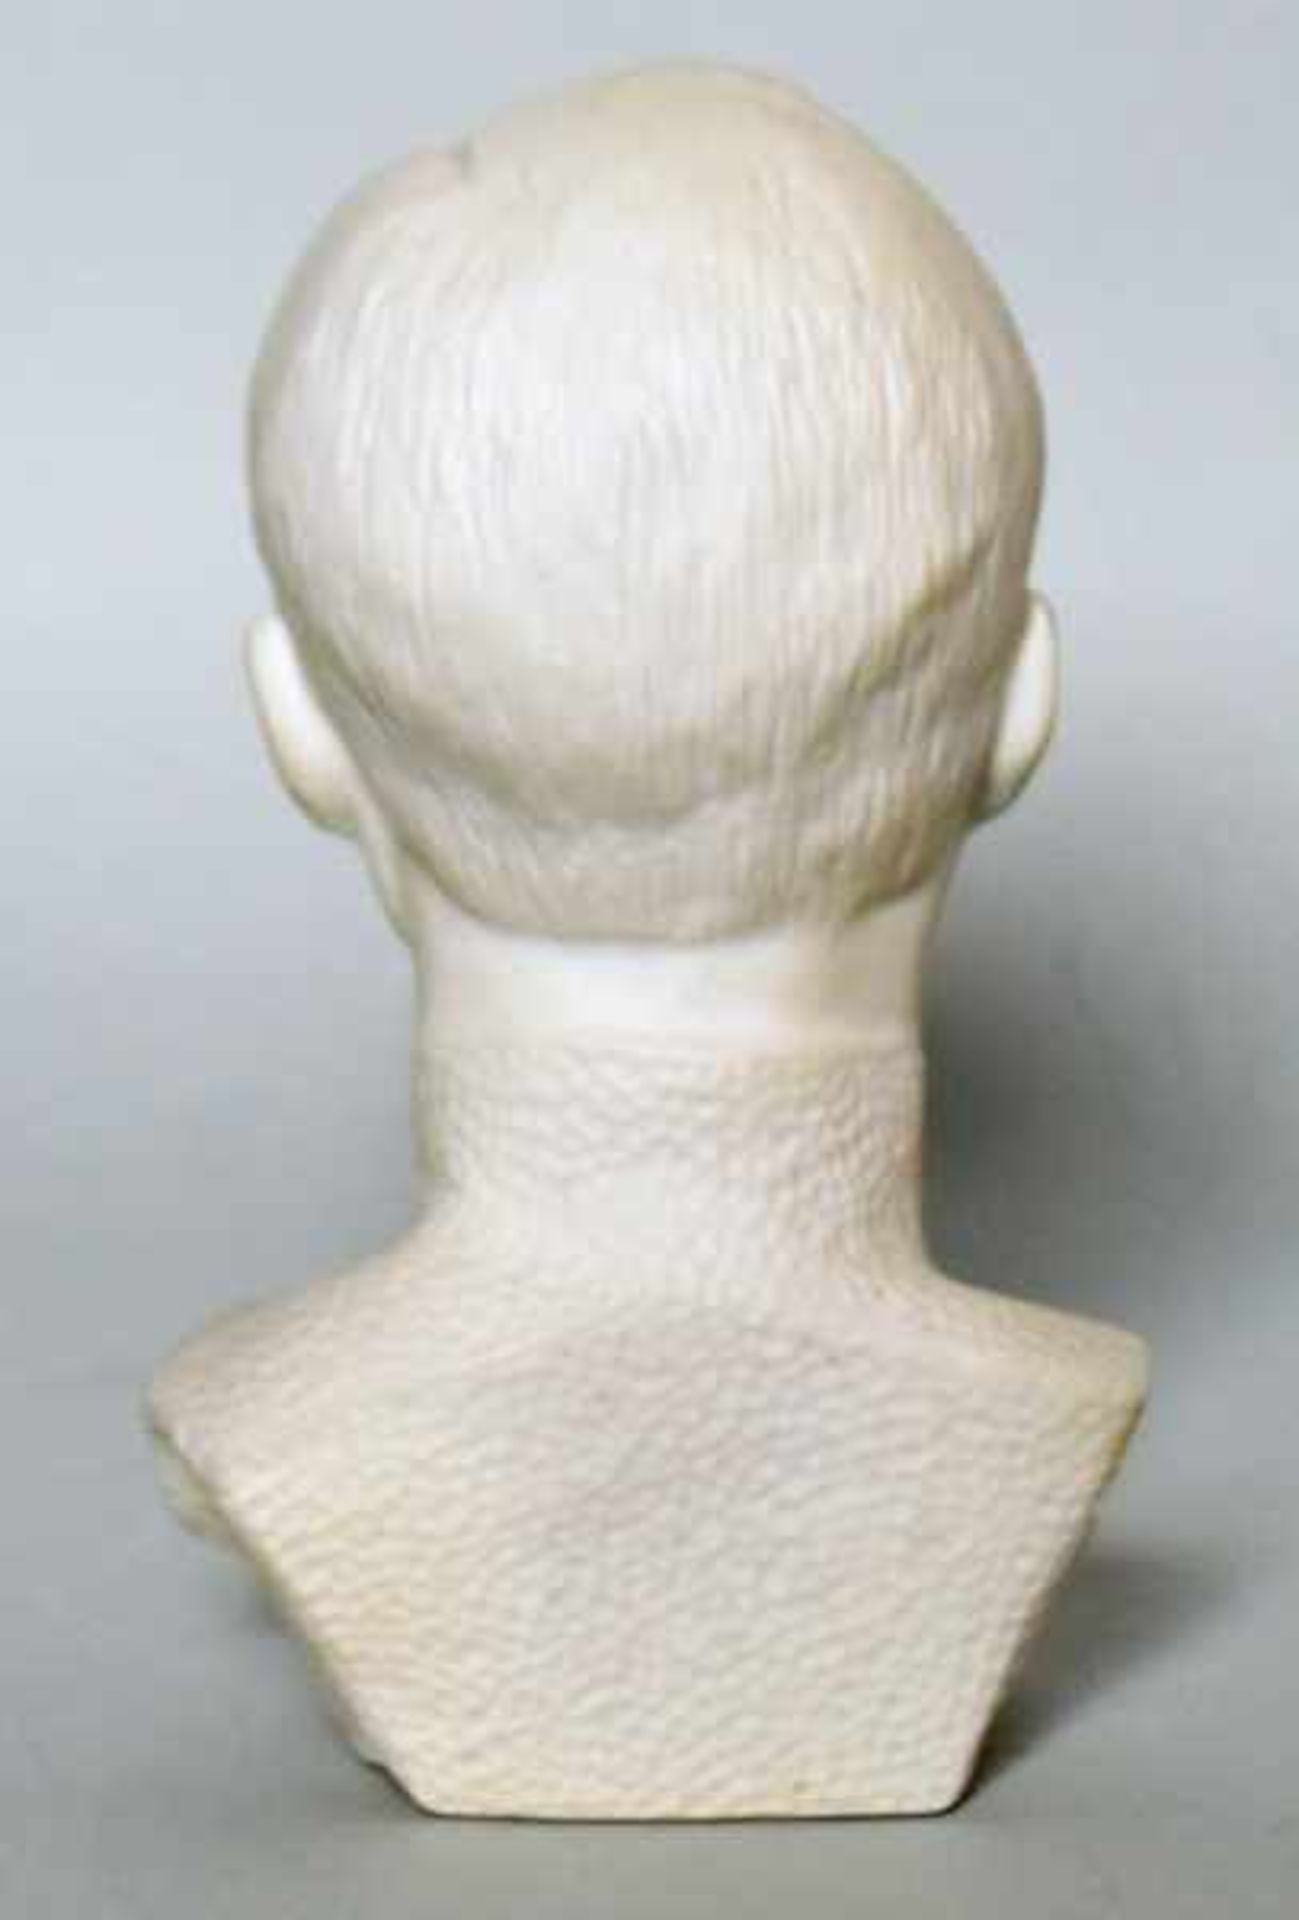 KLEINBÜSTE DZIERZYNSKI Felix, plastischer Kopf, Weißporzellan, Marke Volkstedt, 13 x 7 x 6 cm - Bild 2 aus 3